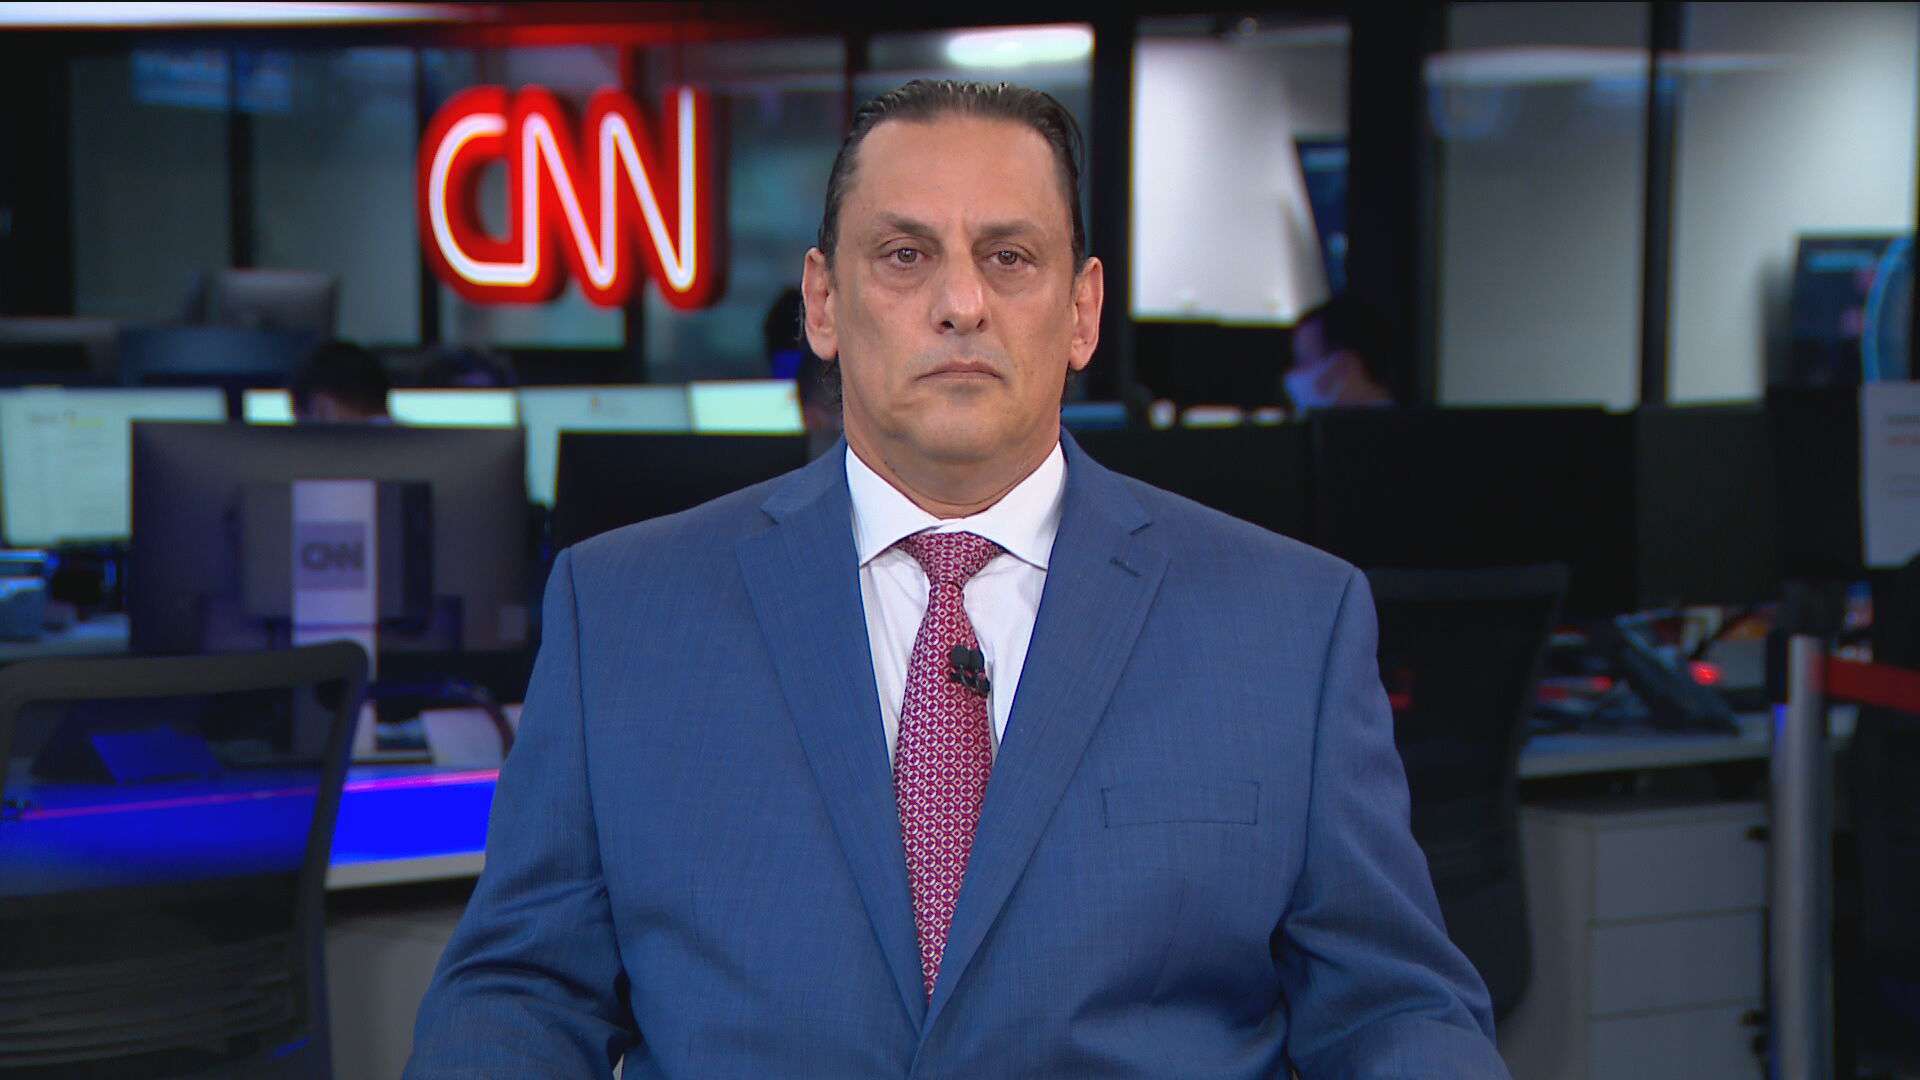 Advogado Frederick Wassef foi entrevistado pela CNN neste domingo